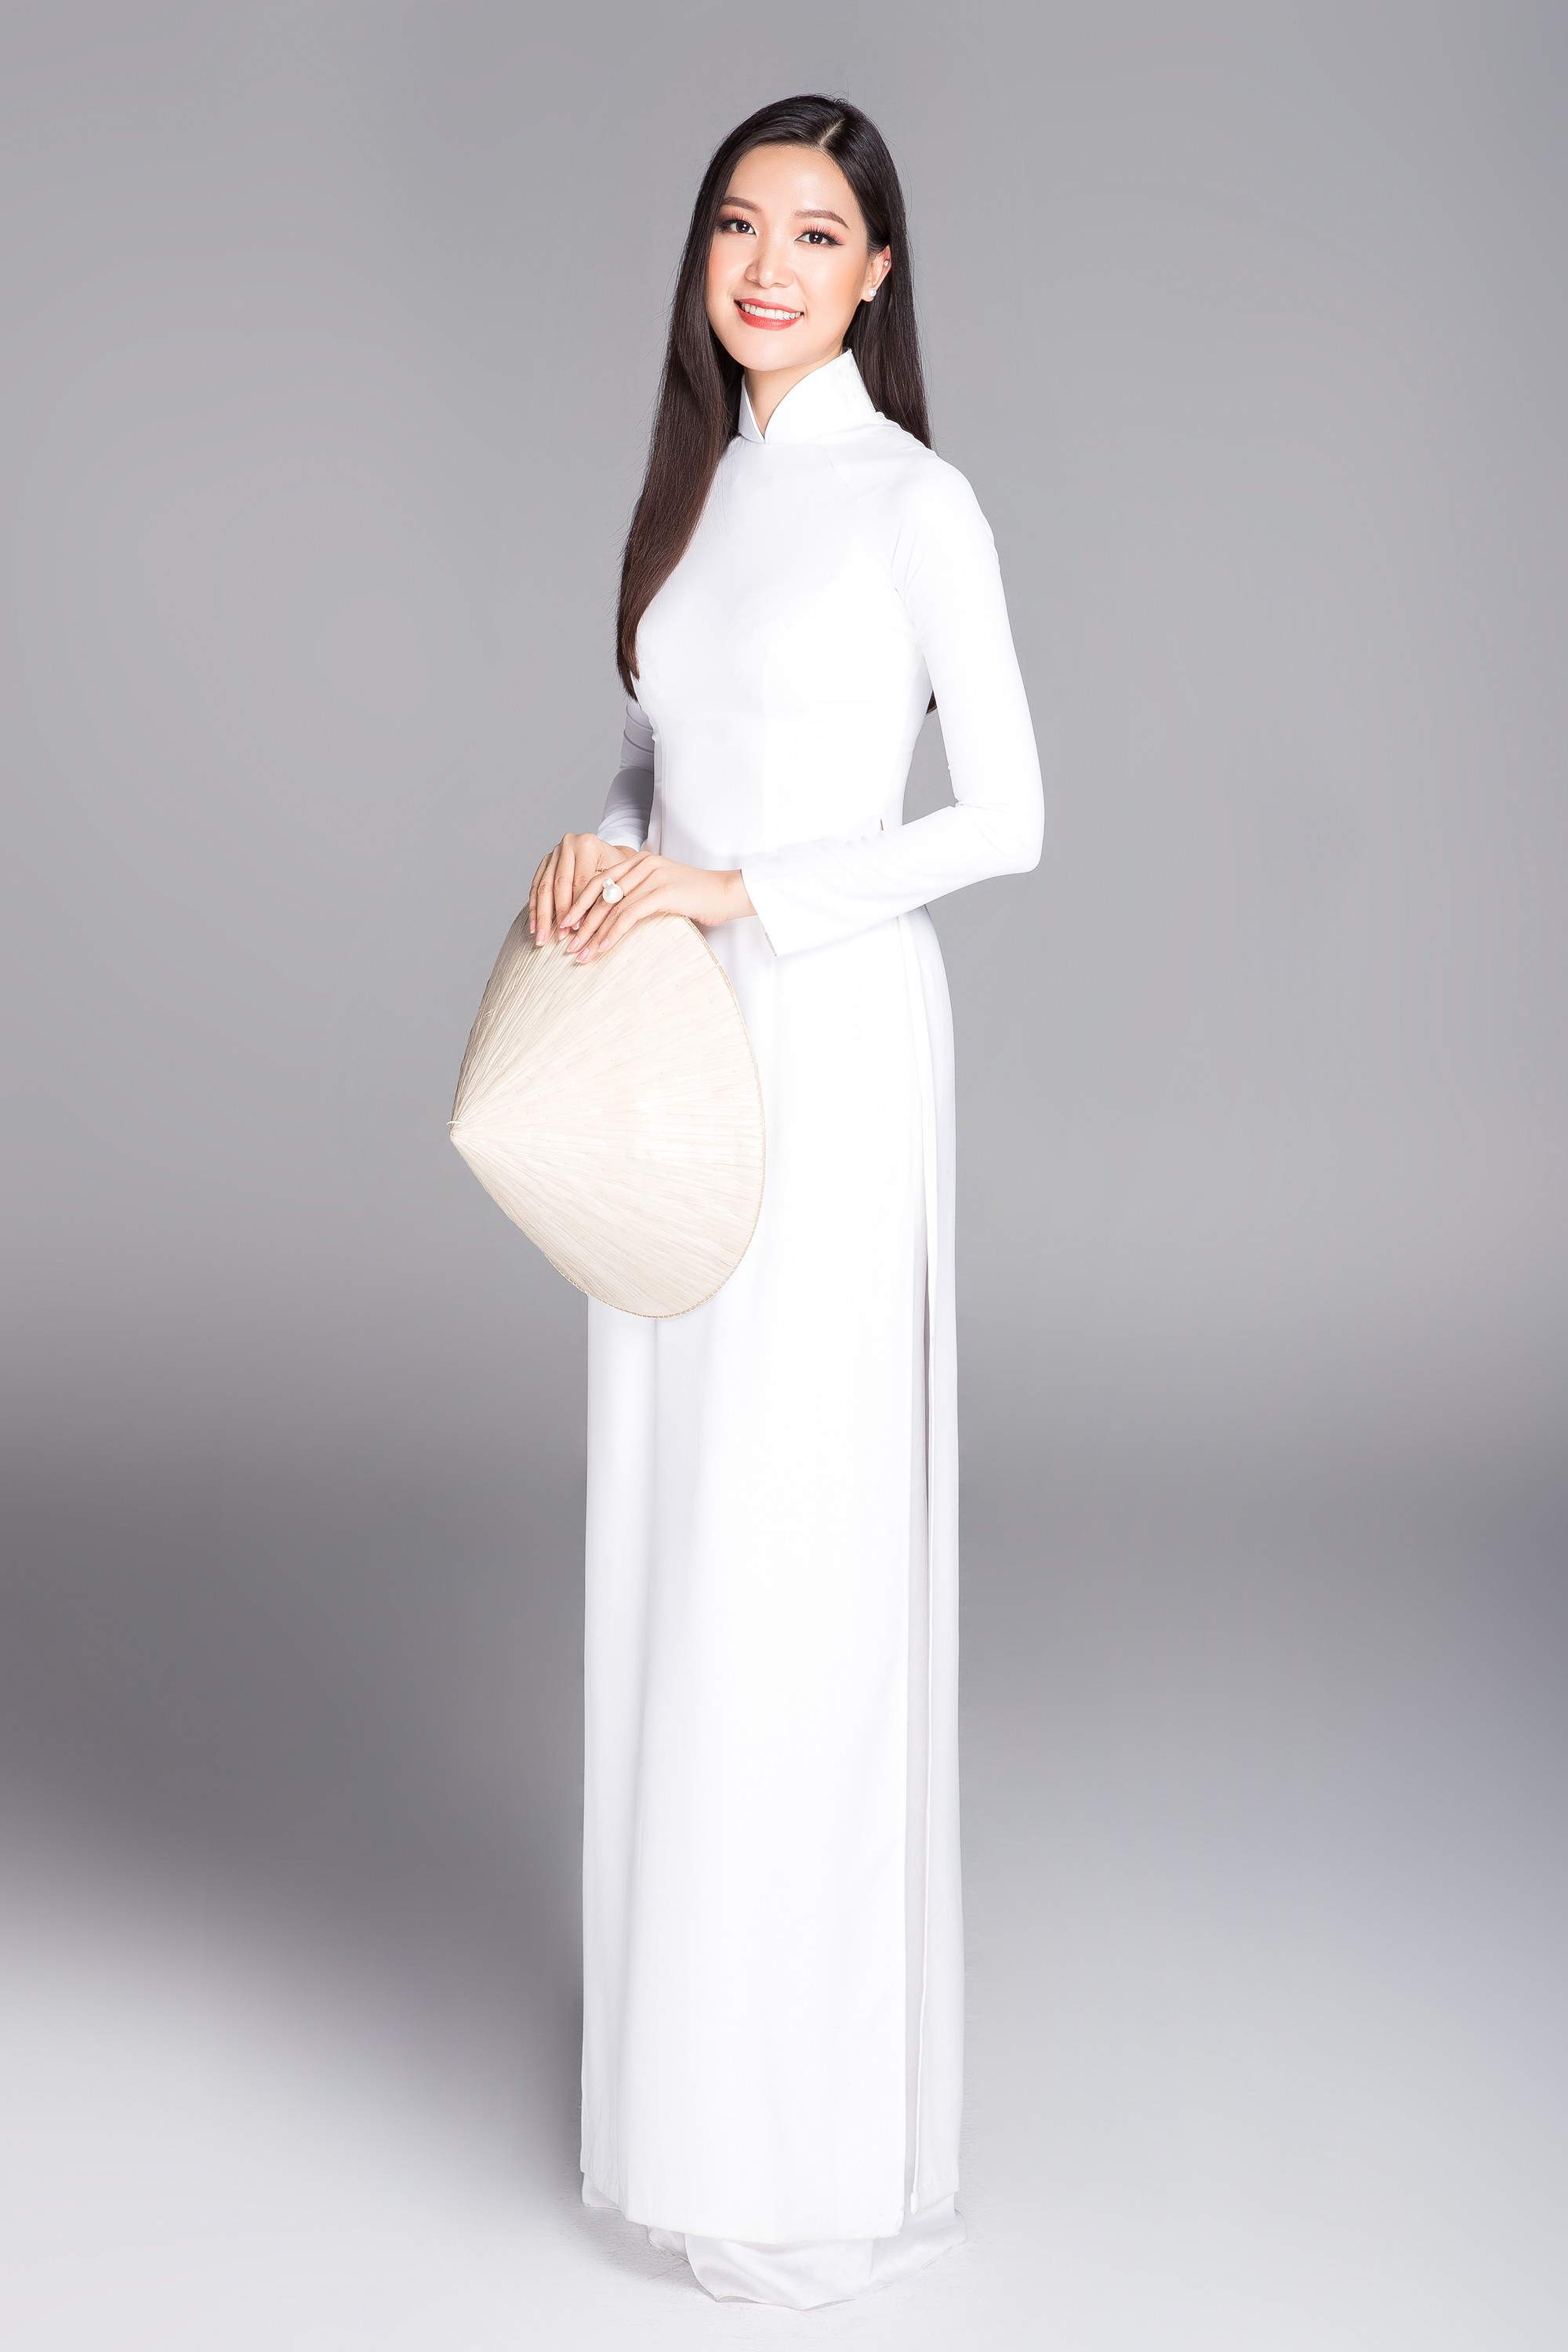 Không váy áo gợi cảm, Hoa hậu Kỳ Duyên, Đặng Thu Thảo lại gợi nhớ cả bầu trời thanh xuân khi diện áo dài trắng nữ sinh - Ảnh 3.